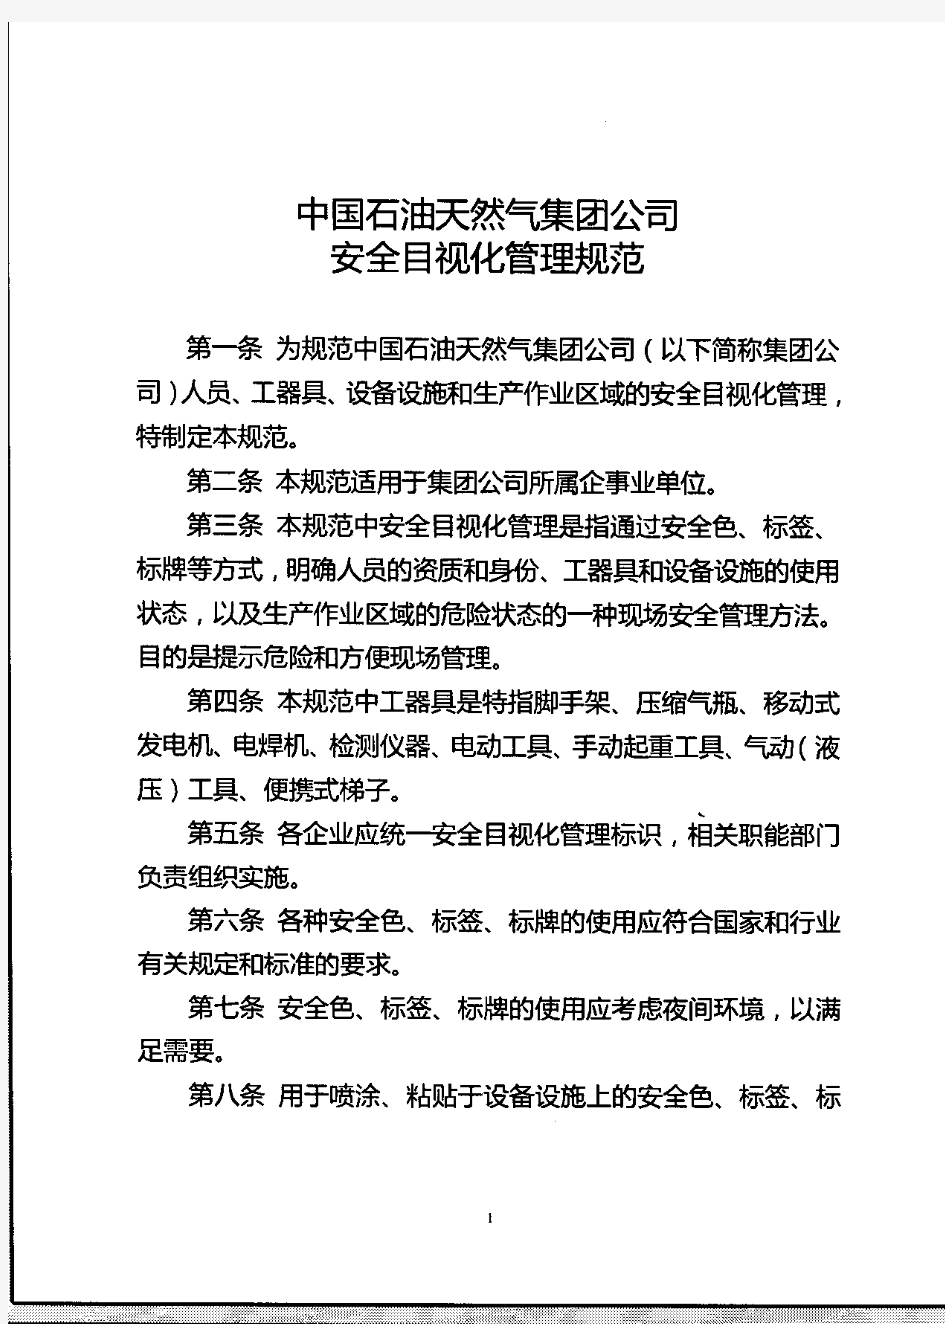 中国石油天然气集团公司安全目视化管理规范(安全[2009]552号)